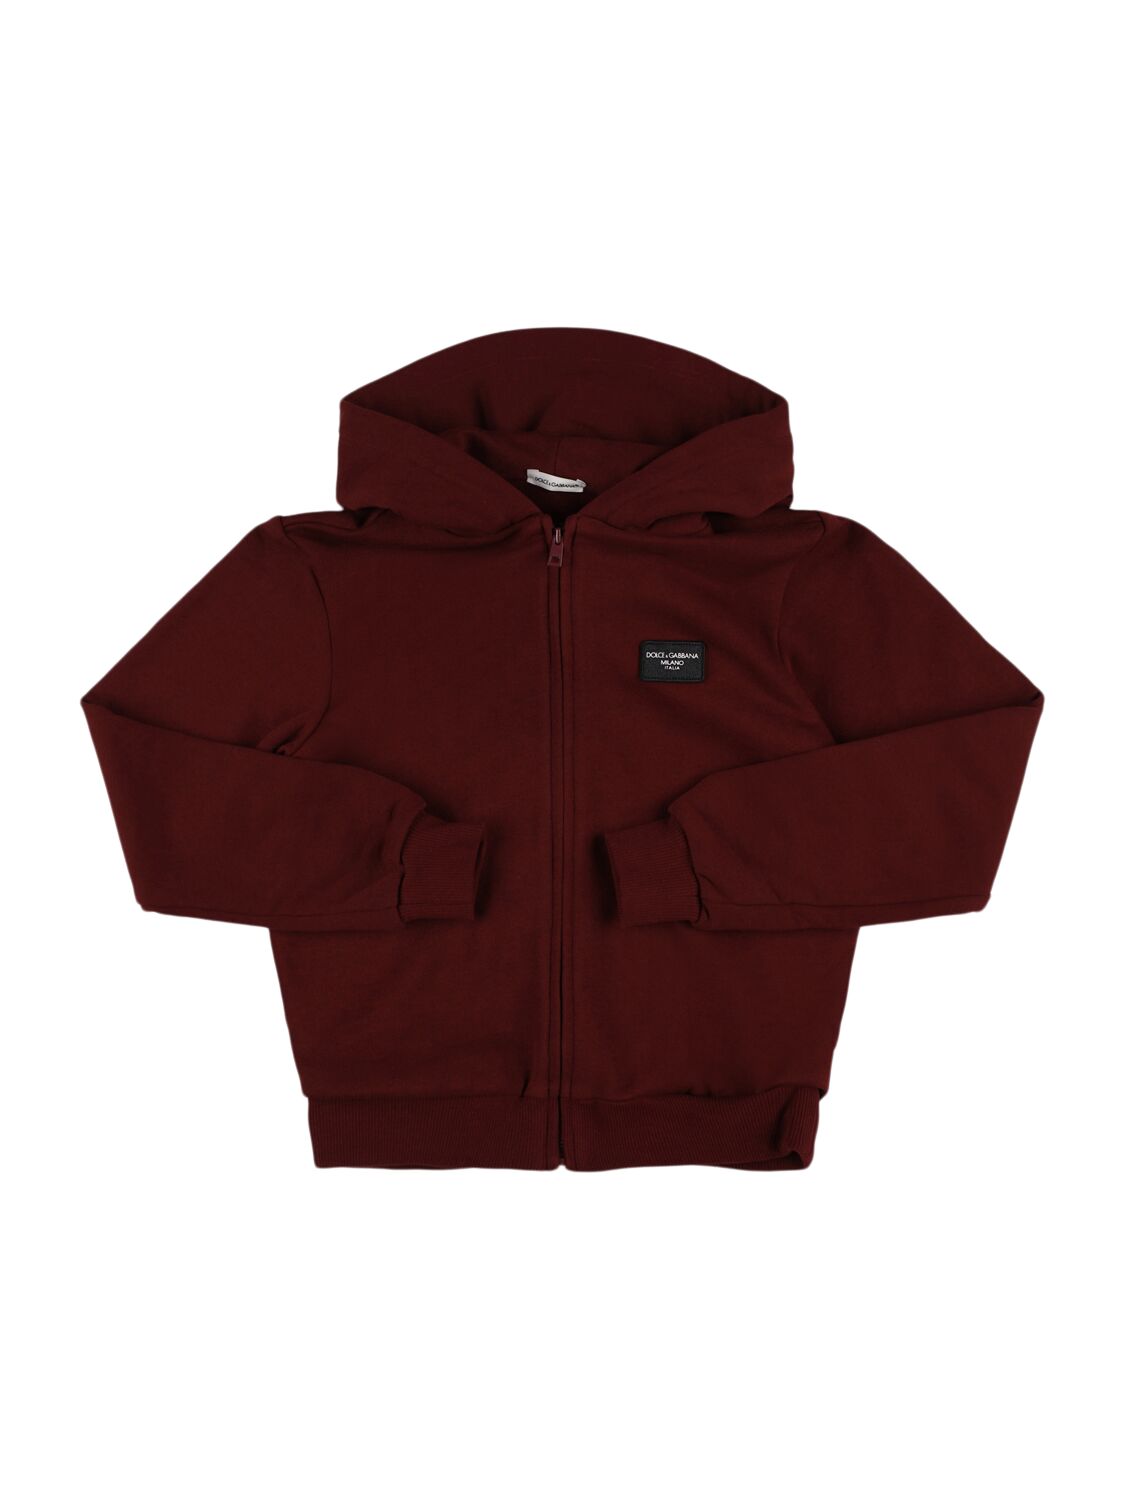 Dolce & Gabbana Cotton Zip-up Hooded Sweatshirt In Brown